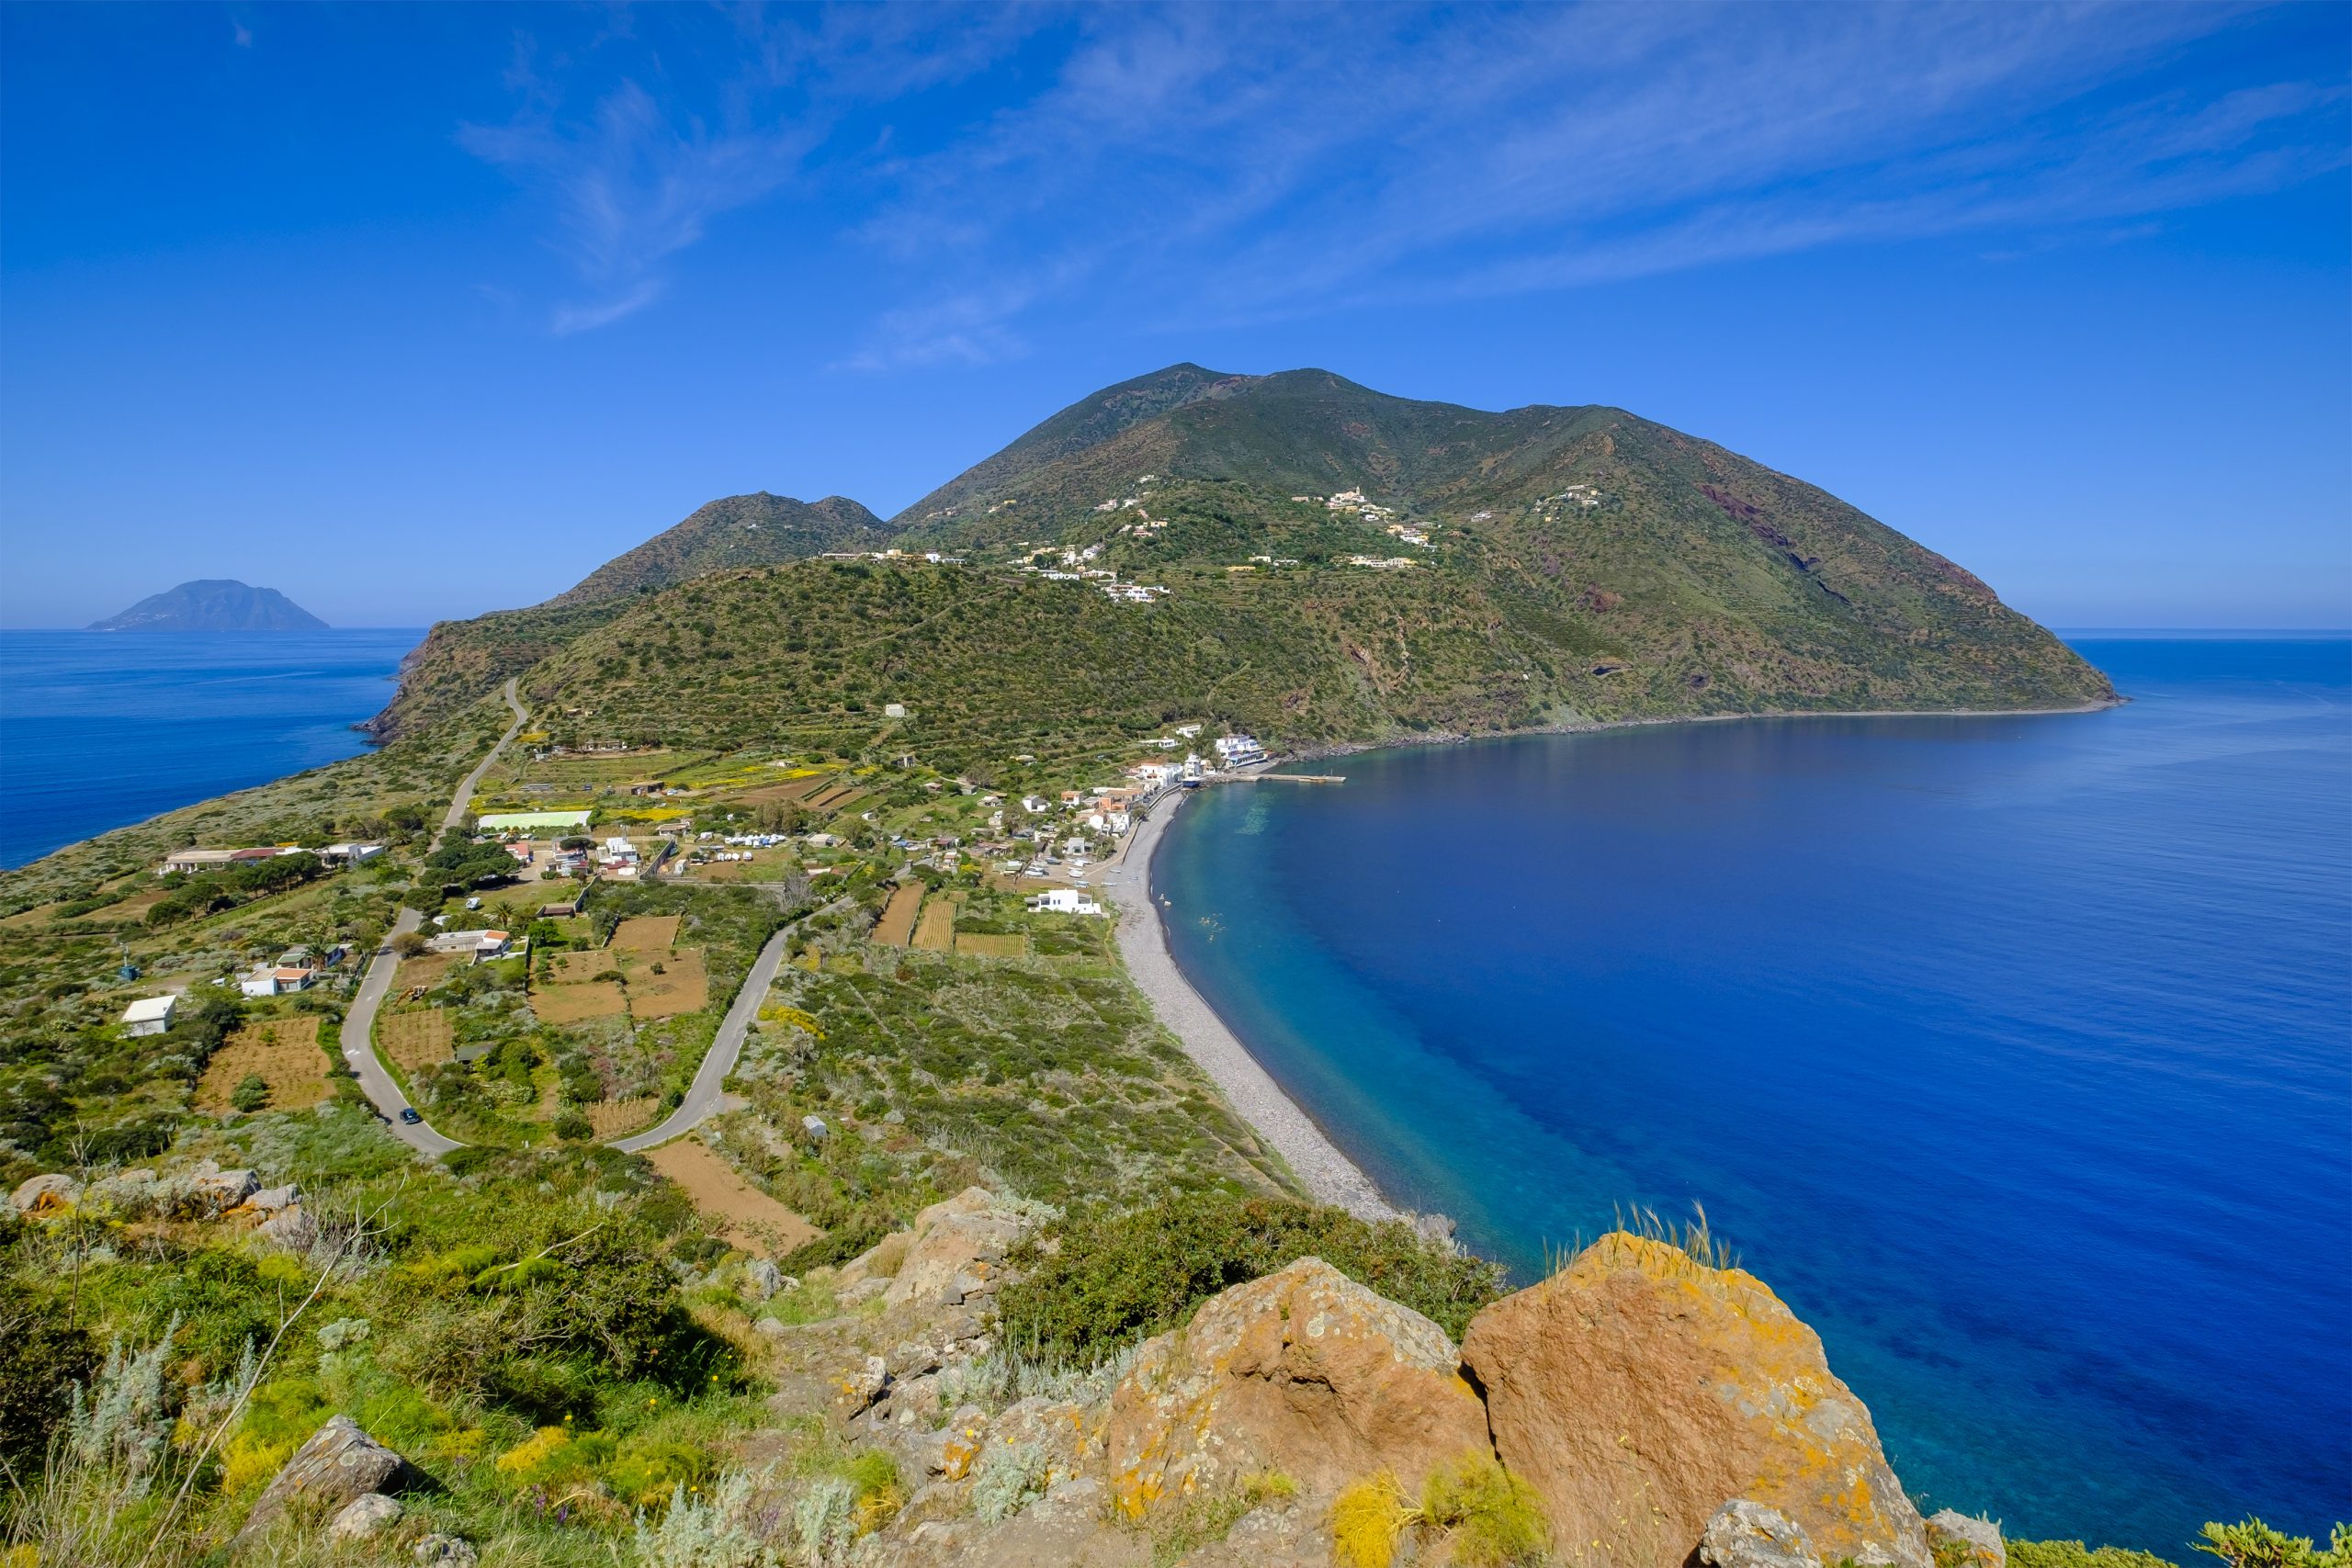 Urlaub ohne Auto auf der Insel Alicudi in Italien